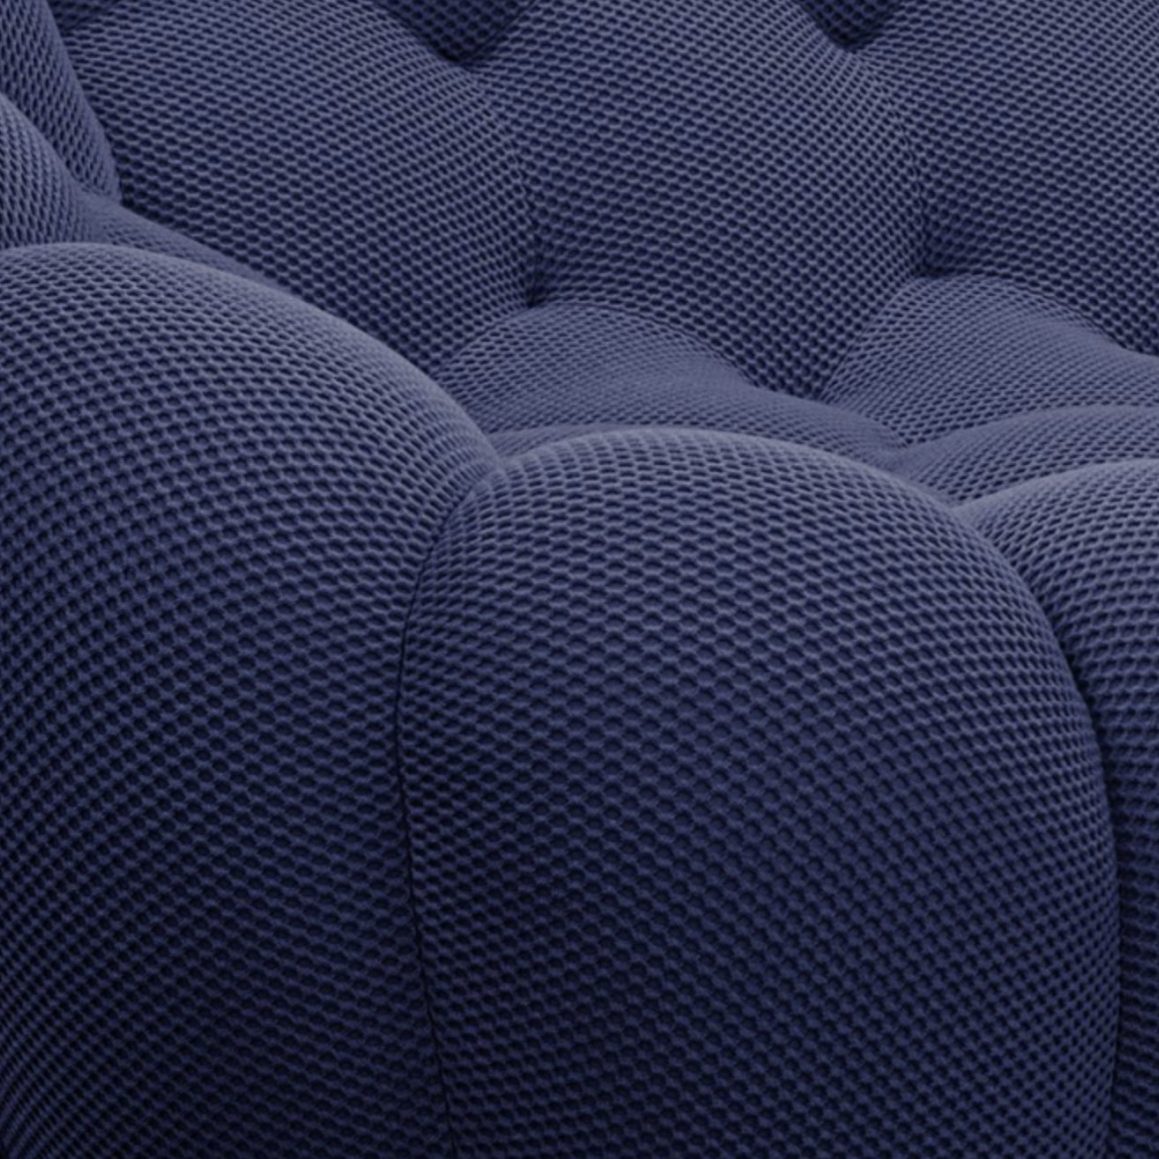 # 一張路邊撿到的藍色沙發，卻是要價 24 萬的頂級傢具：看似飽受幸運之神眷顧，卻引起全網討論！？ 2